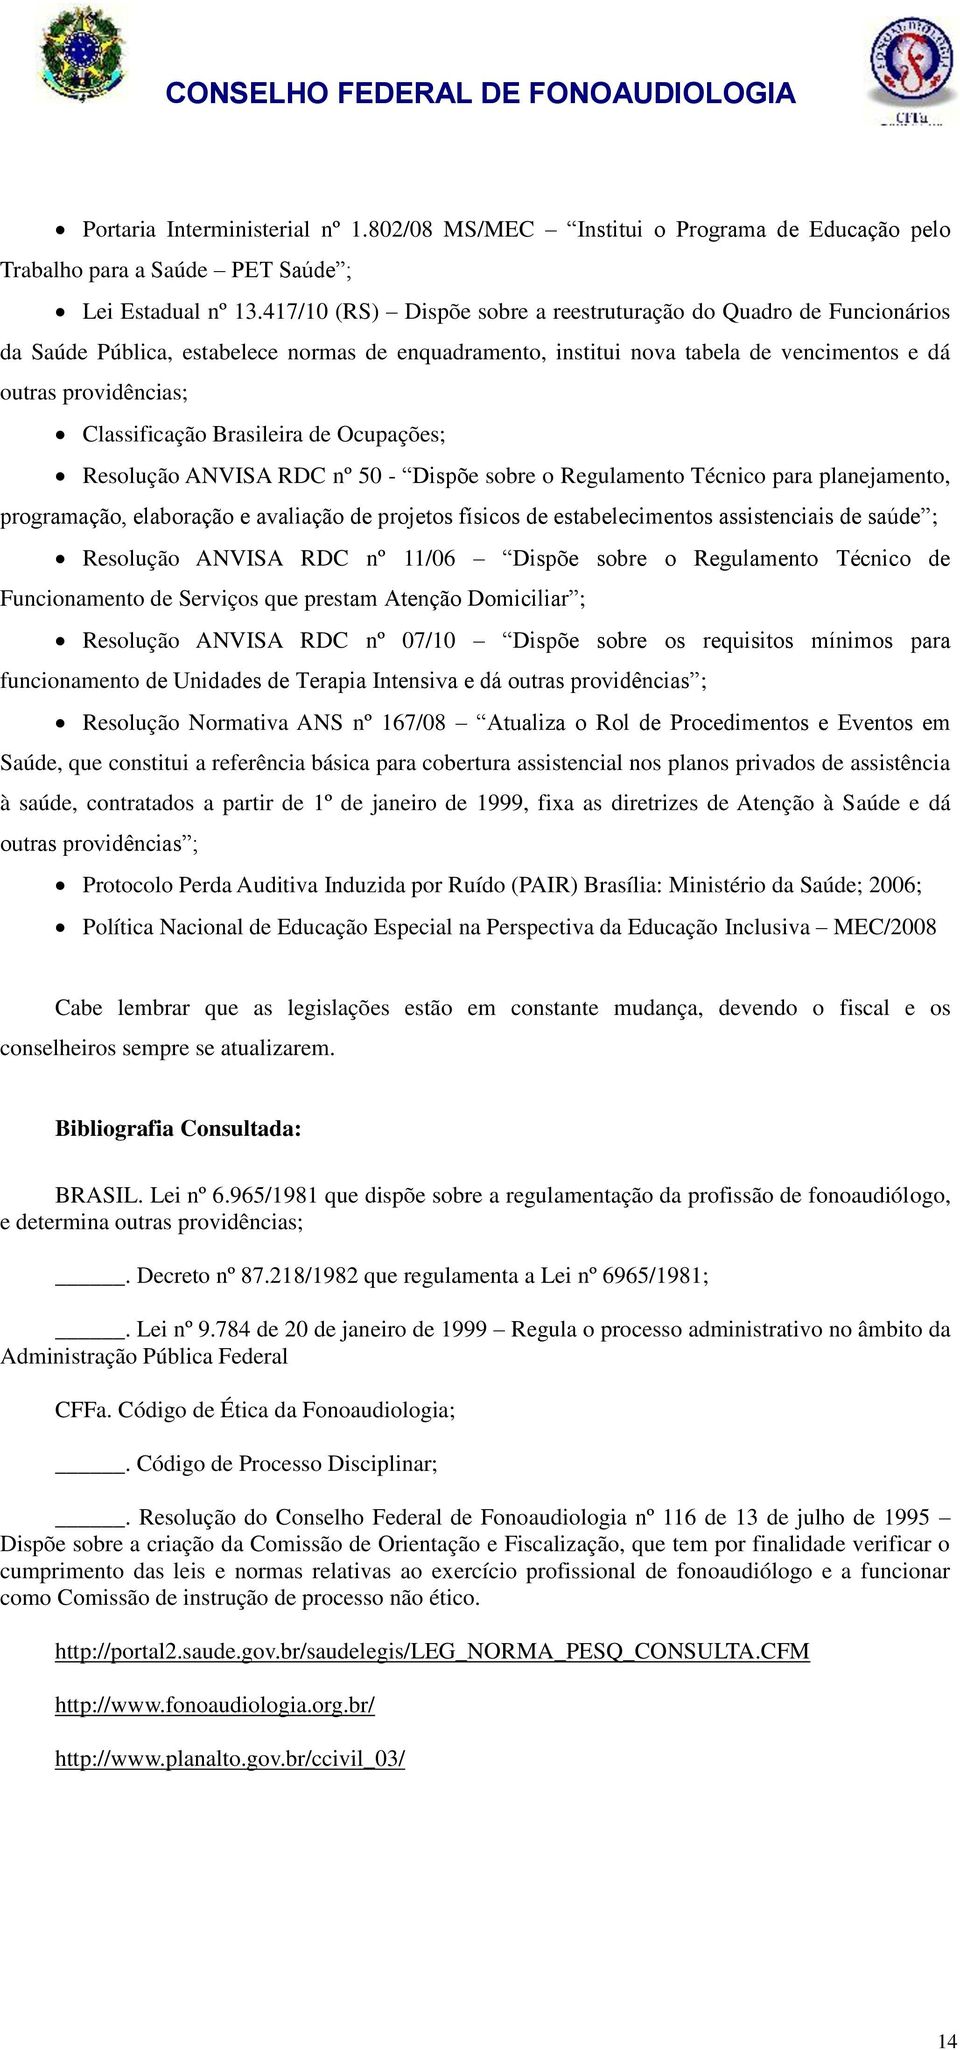 Brasileira de Ocupações; Resolução ANVISA RDC nº 50 - Dispõe sobre o Regulamento Técnico para planejamento, programação, elaboração e avaliação de projetos físicos de estabelecimentos assistenciais